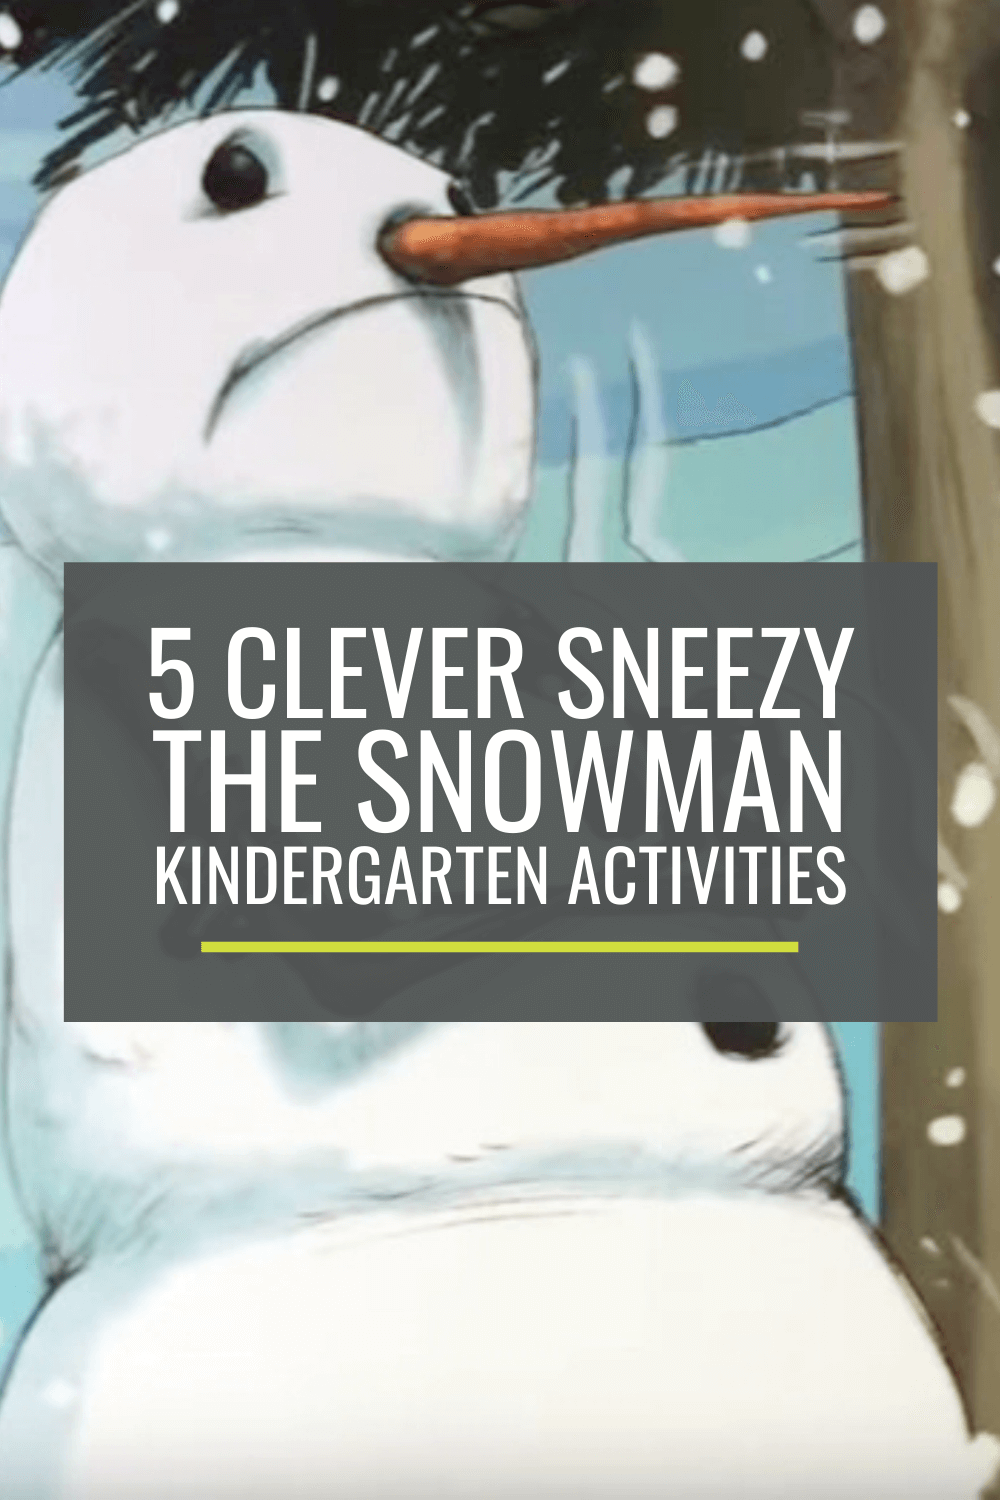 5 Clever Sneezy the Snowman Kindergarten Activities